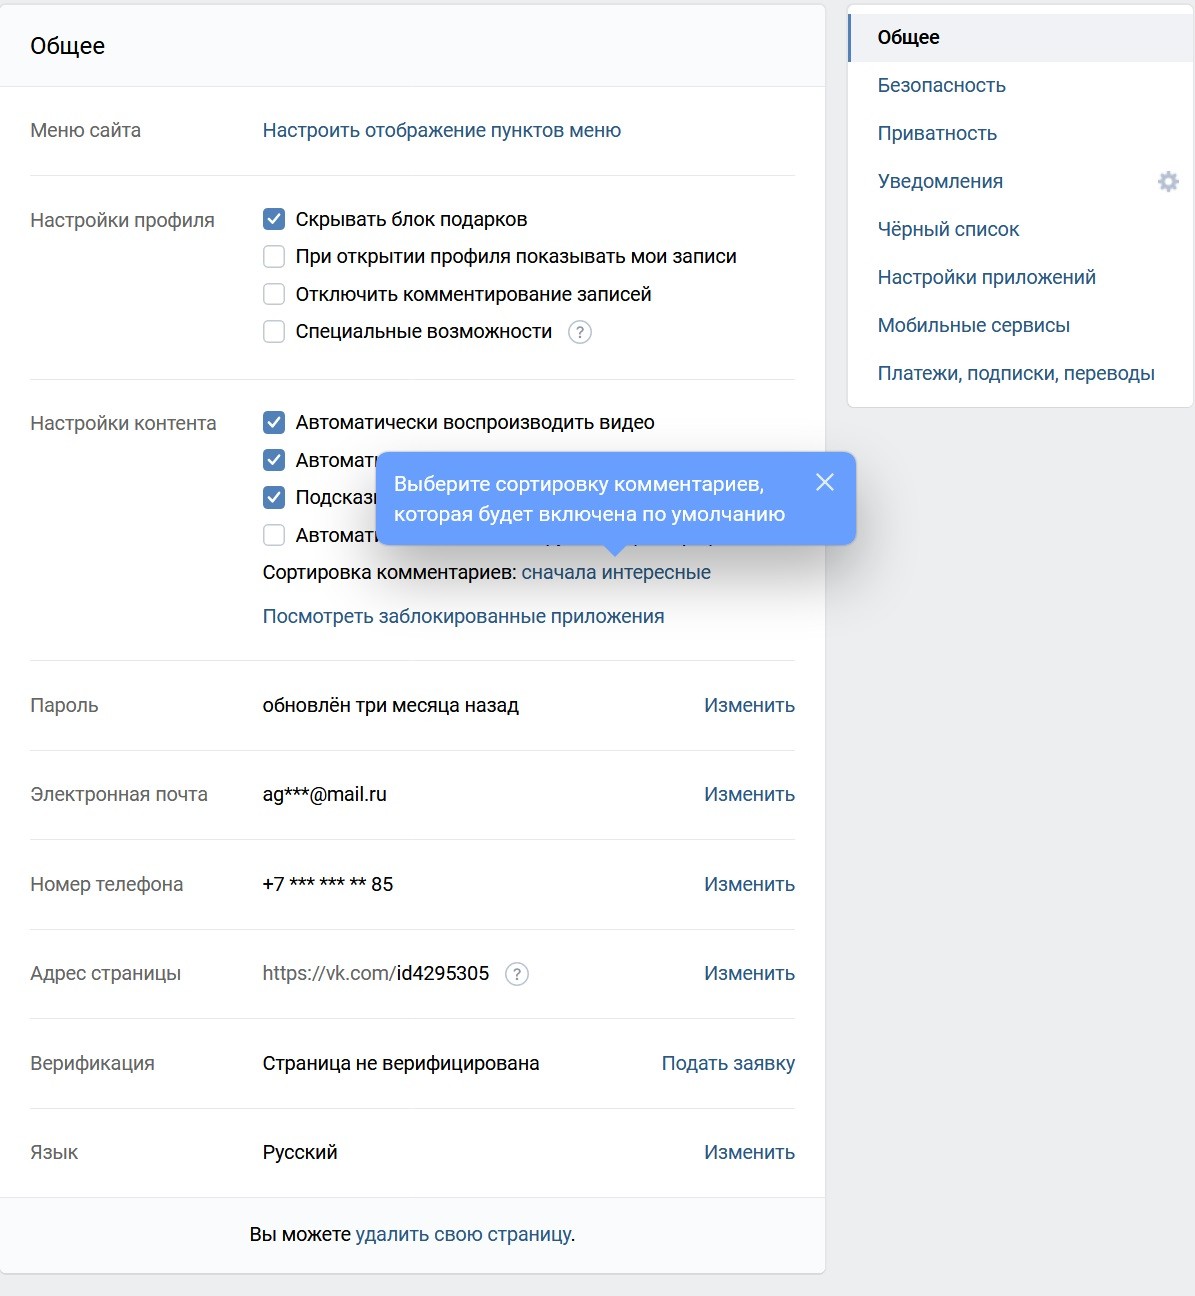 Как Удалить Геолокацию С Фото Вконтакте